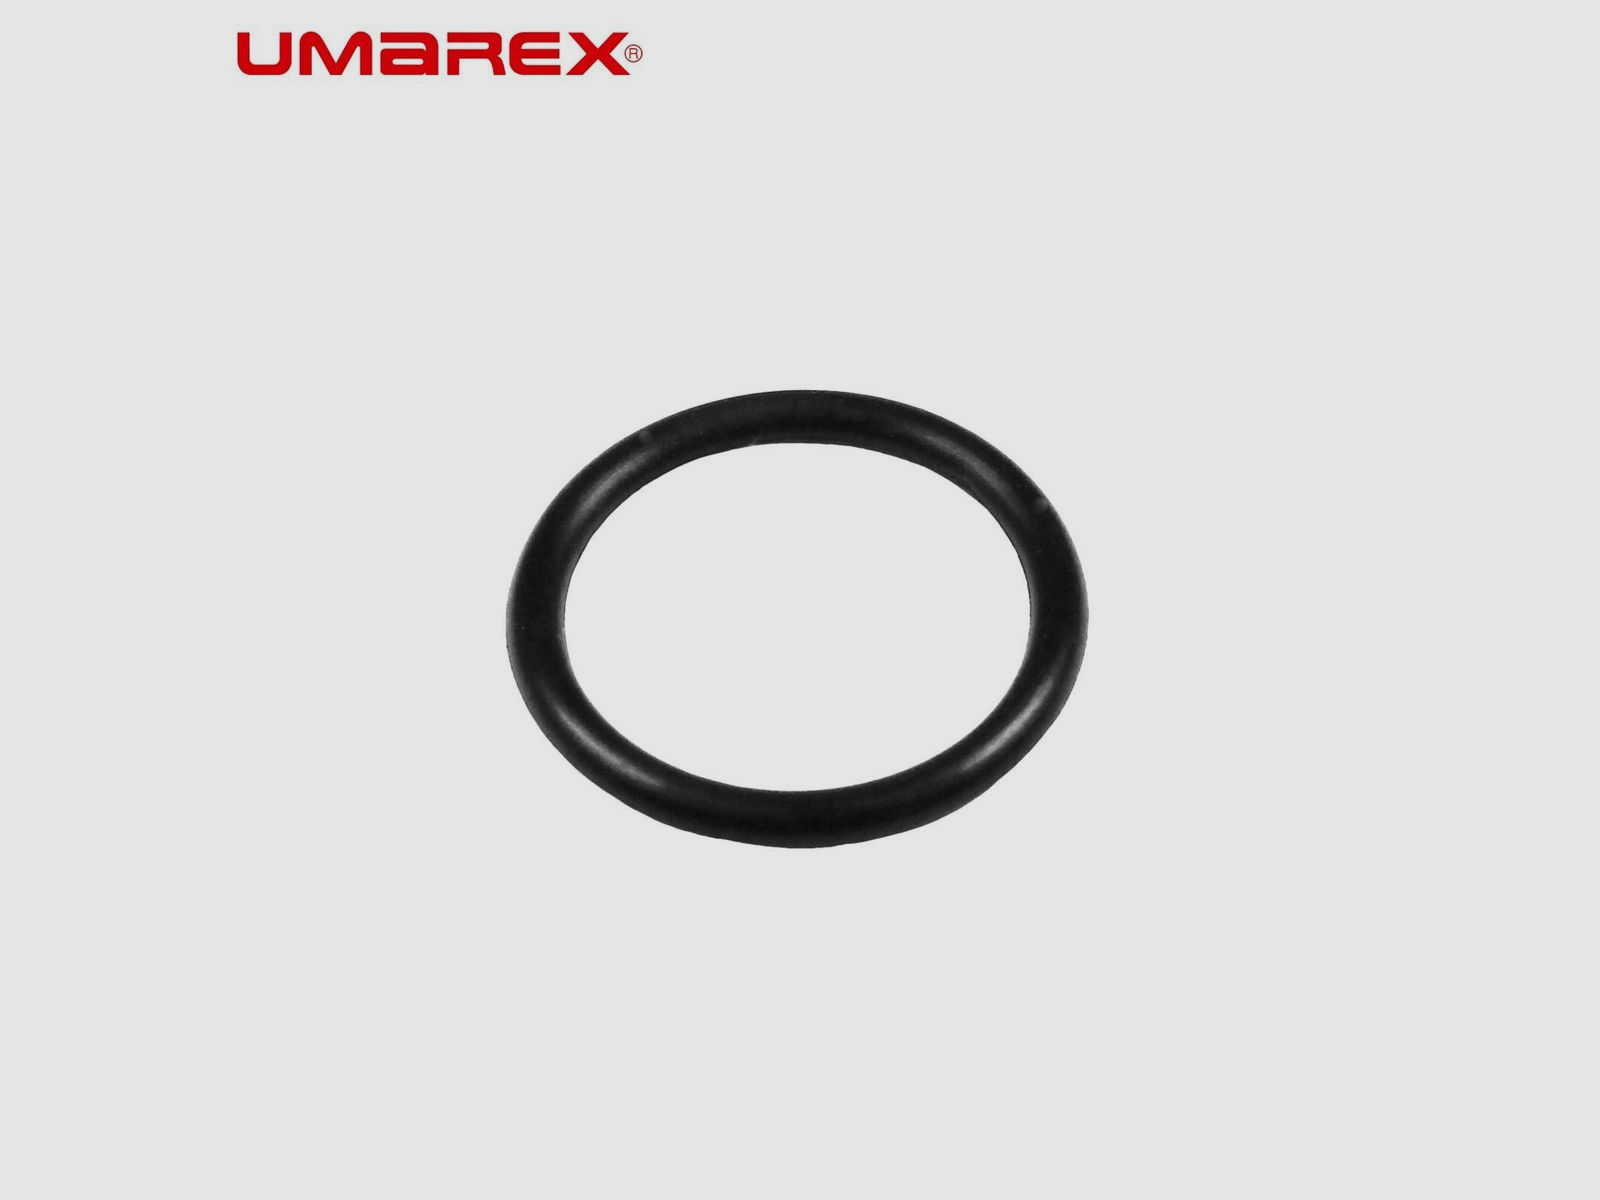 Umarex 850 M2 / Hämmerli 850 AirMagnum O-Ring für Co2-Adapter 2 x 12 Gramm - Umarex Artikelnummer 465.62.0.60